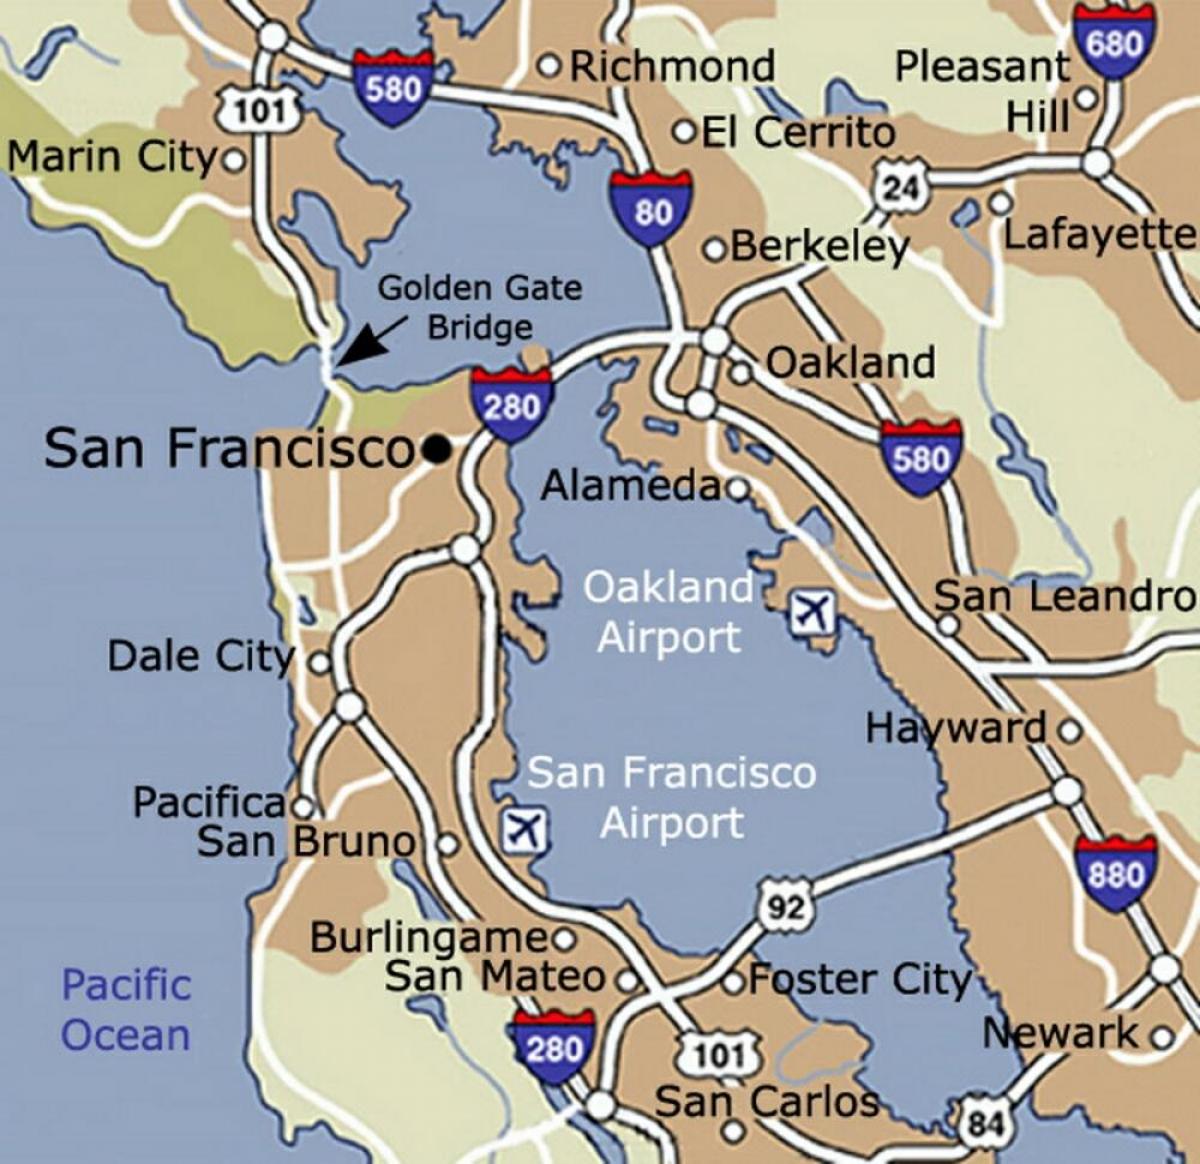 Kort over San Francisco lufthavn og omkringliggende område